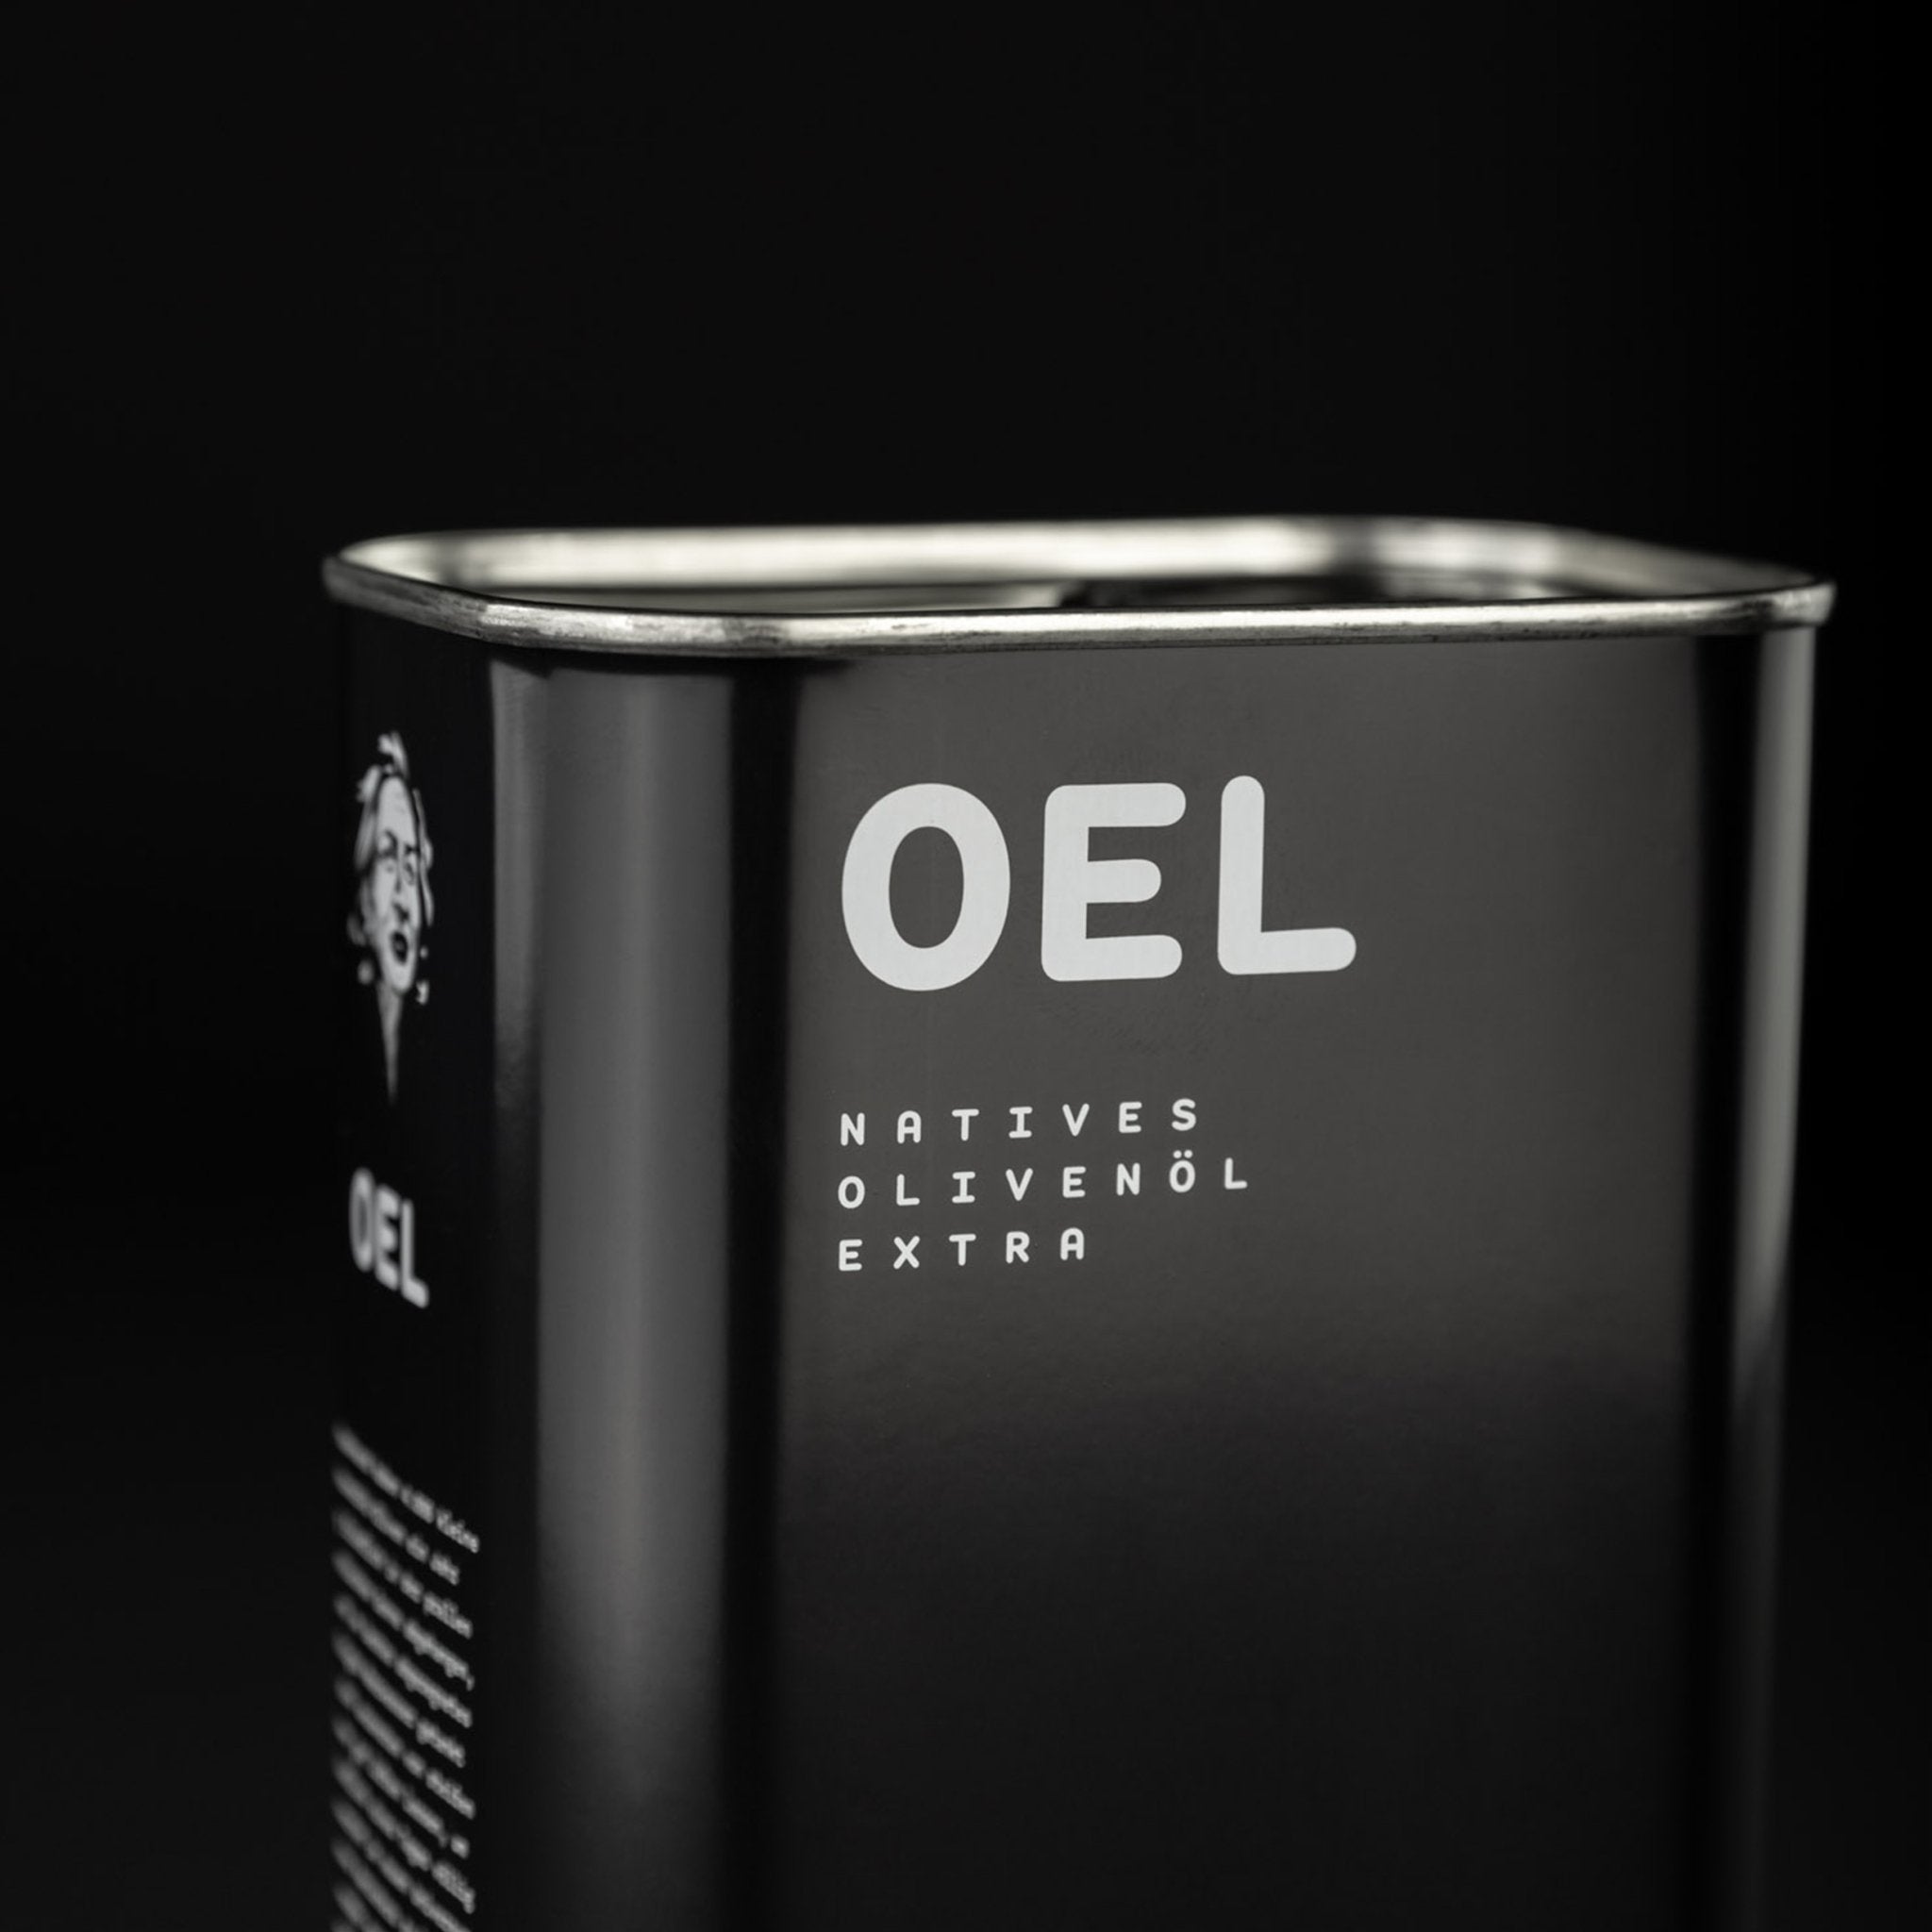 OEL 1.000 ml - Bio Natives Olivenöl Extra aus Griechenland - OEL - Griechische Produkte und Olivenöl - Bestandsartikel red. MWST (7%) - Stavropoulos Ilias & C.O.